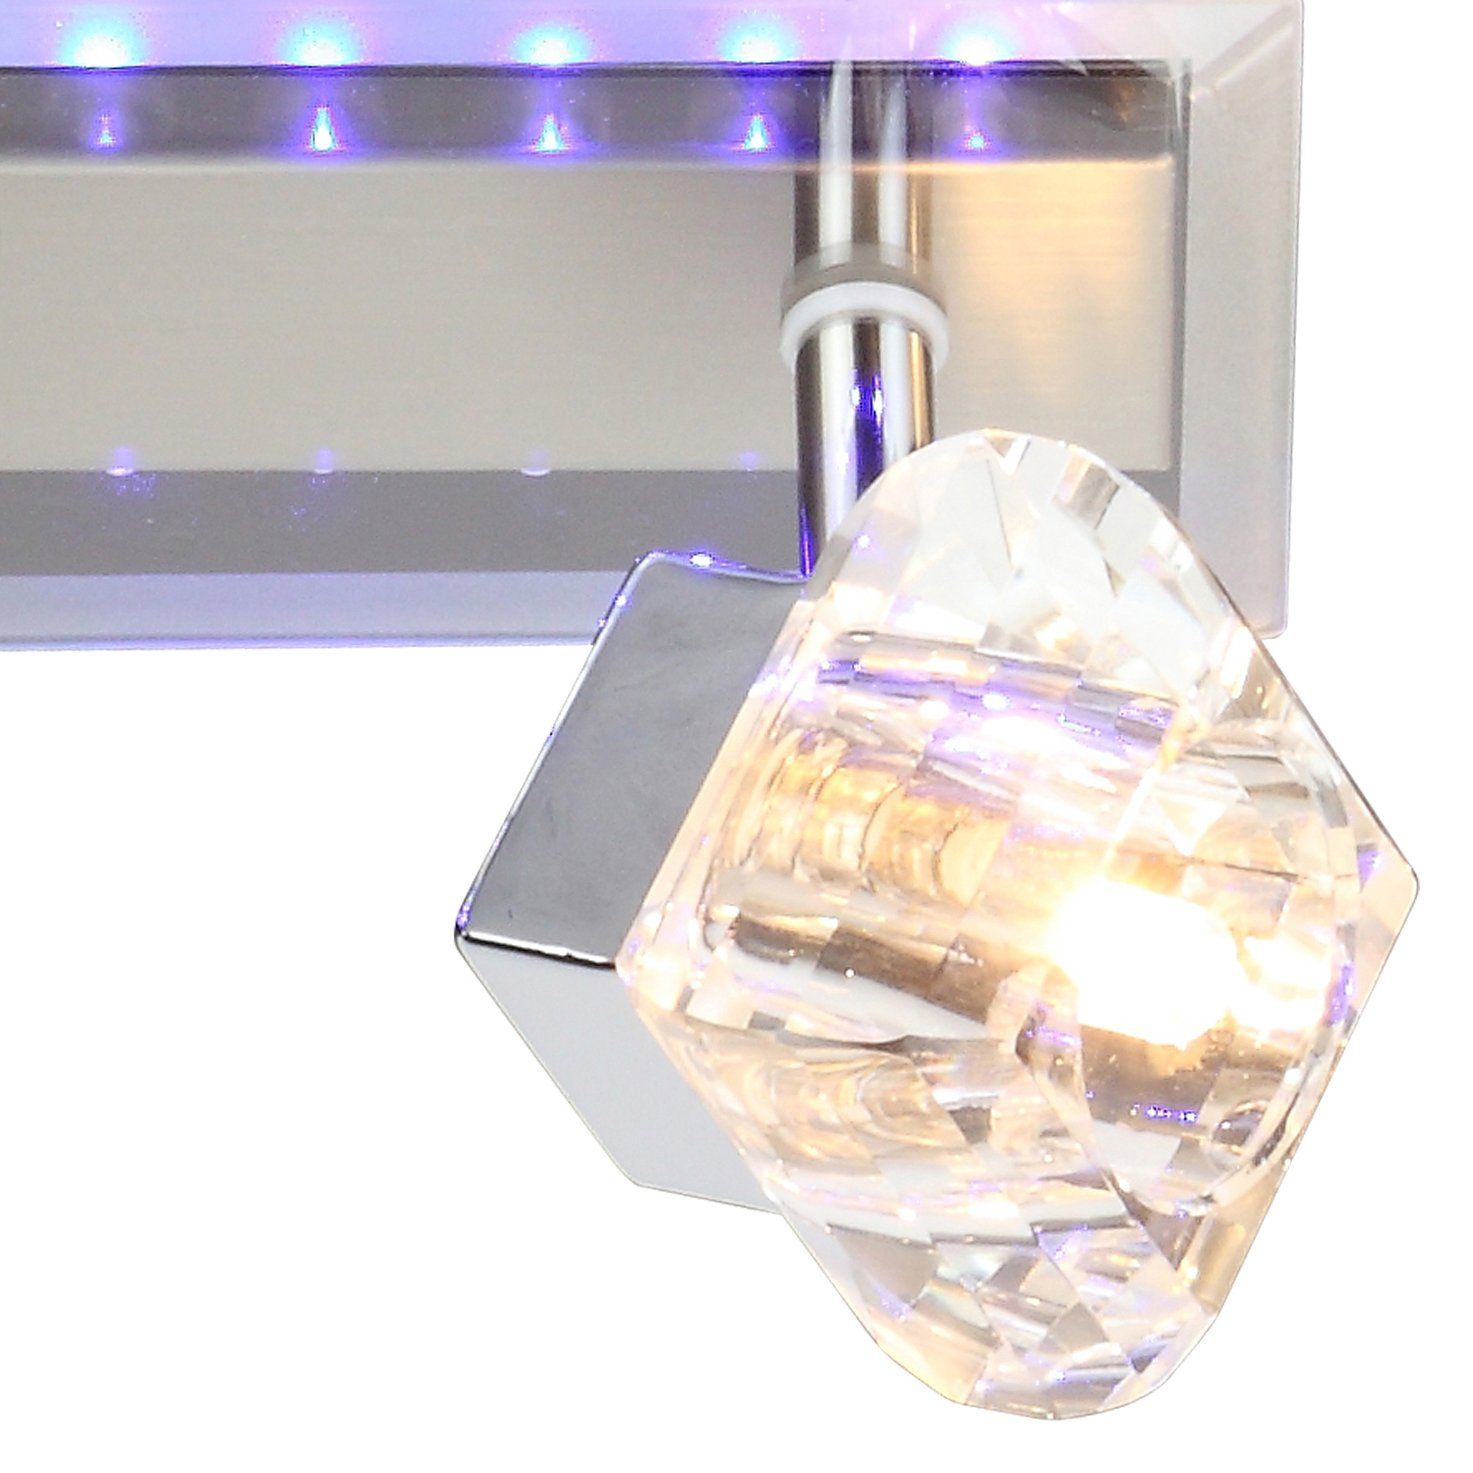 Barrette LED 2 spots orientables MACKAY argentée en métal et verre